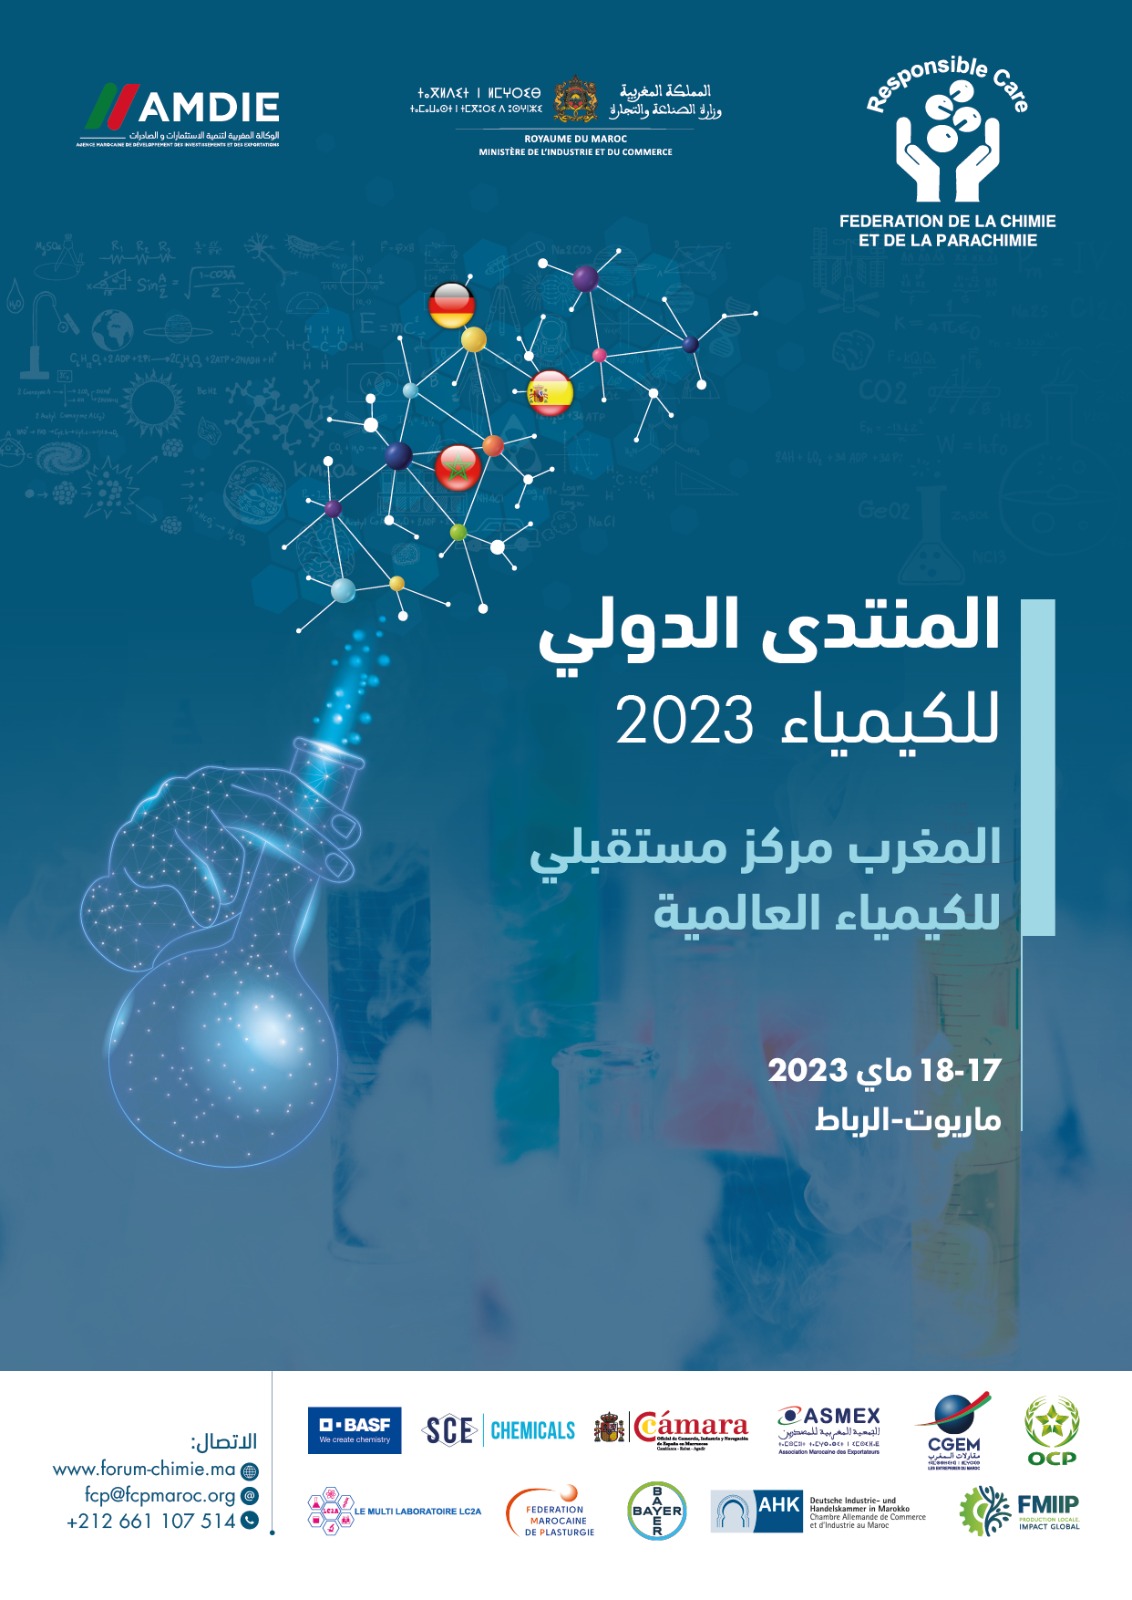 المنتدى الدولي للكيمياء ما بين 17 و18 ماي 2023 بالرباط تحت عنوان: “المغرب، مركز مستقبلي للكيمياء العالمية”